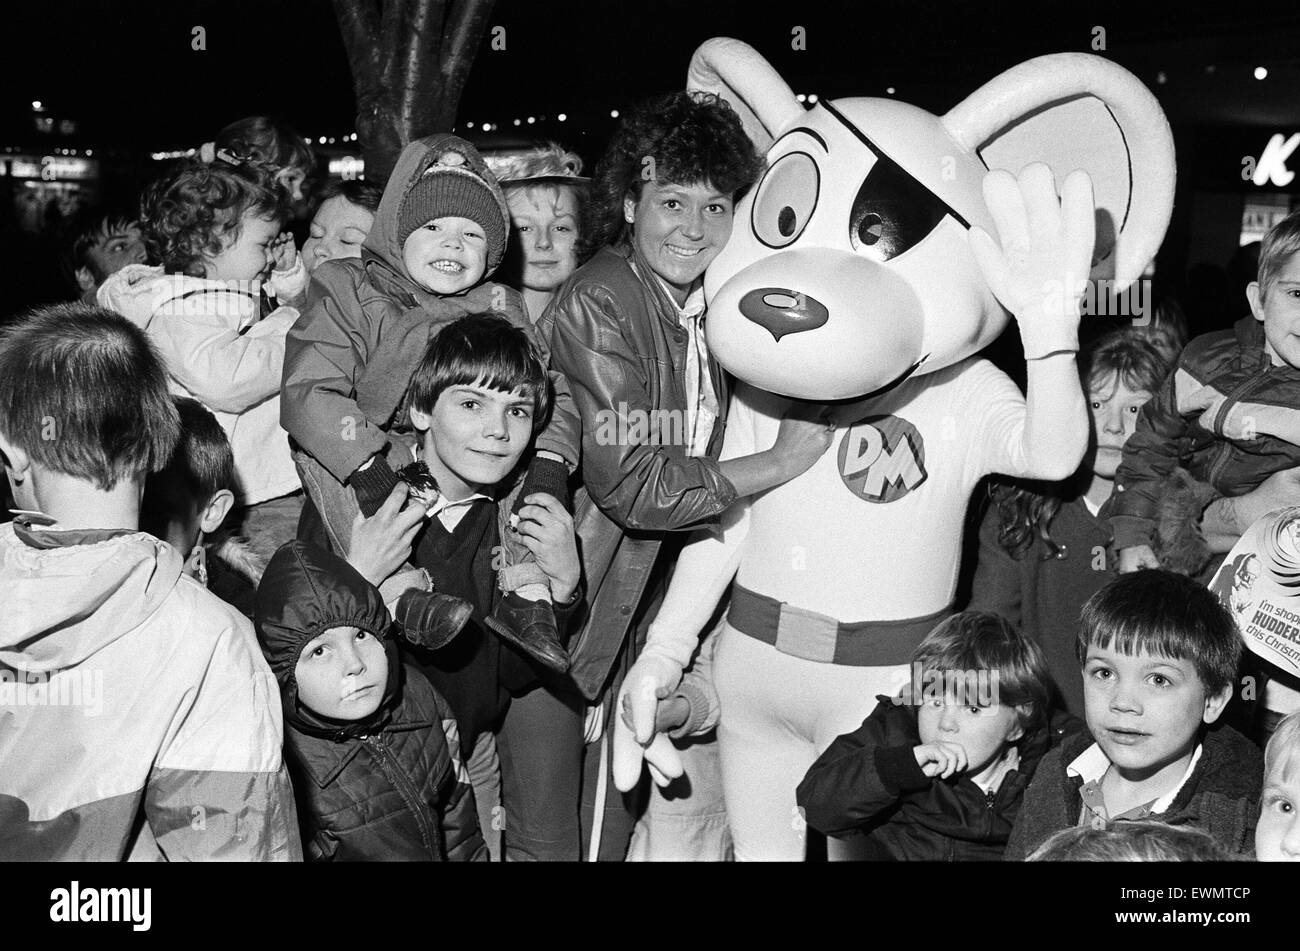 Des centaines d'enfants paniers la piazza pour l'allumage des lumières de Noël. Mlle examinateur, Madeline Garbutt, et la télévision personnage de Danger Mouse avec certains des jeunes avant qu'ils effectué l'interrupteur de cérémonie. Banque D'Images